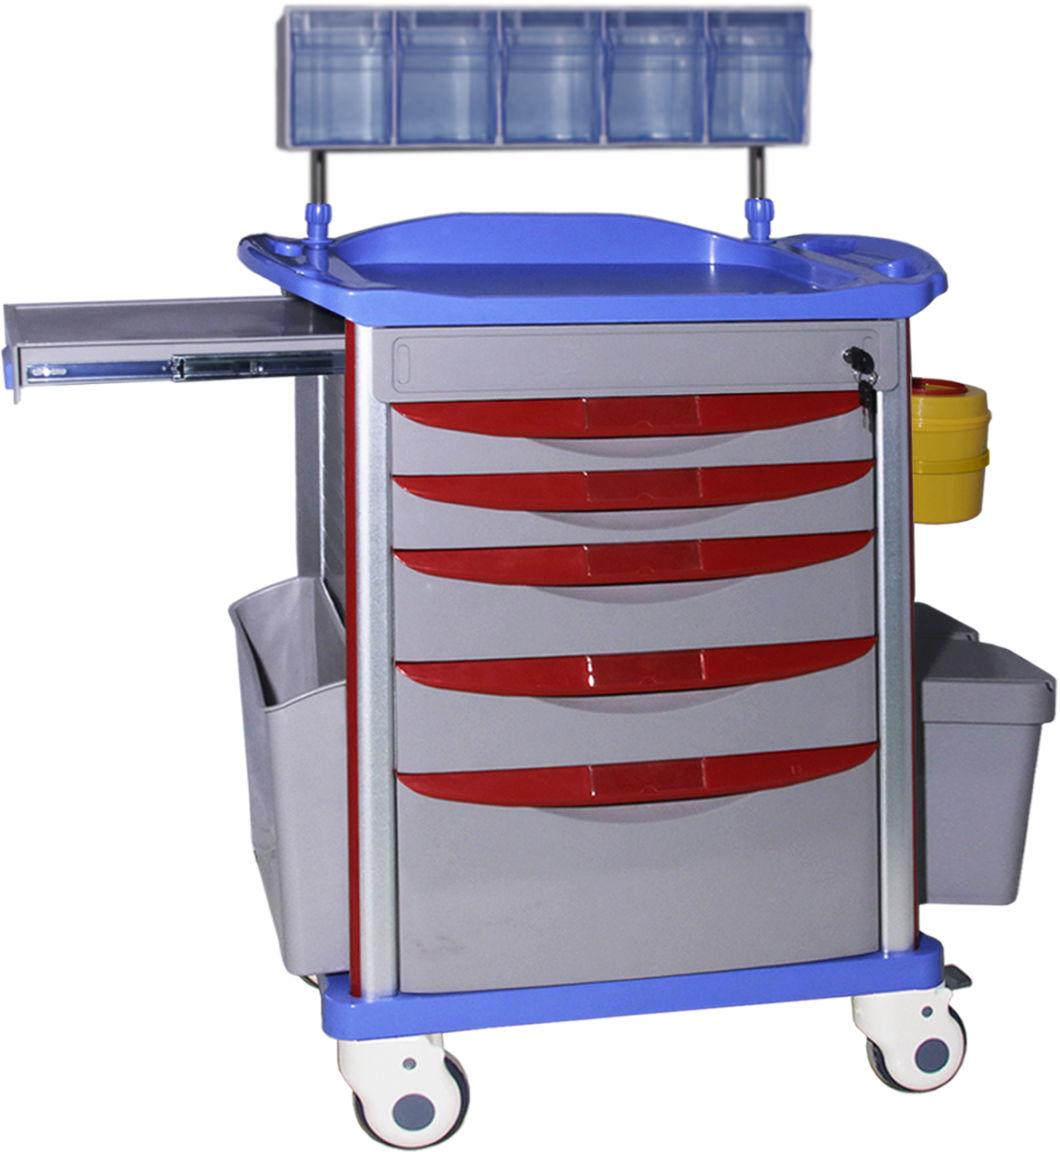 Mn-AC003 Transfer Nursing Treatment Cart ABS Emergency Medical Emergency Trolley for Hospital